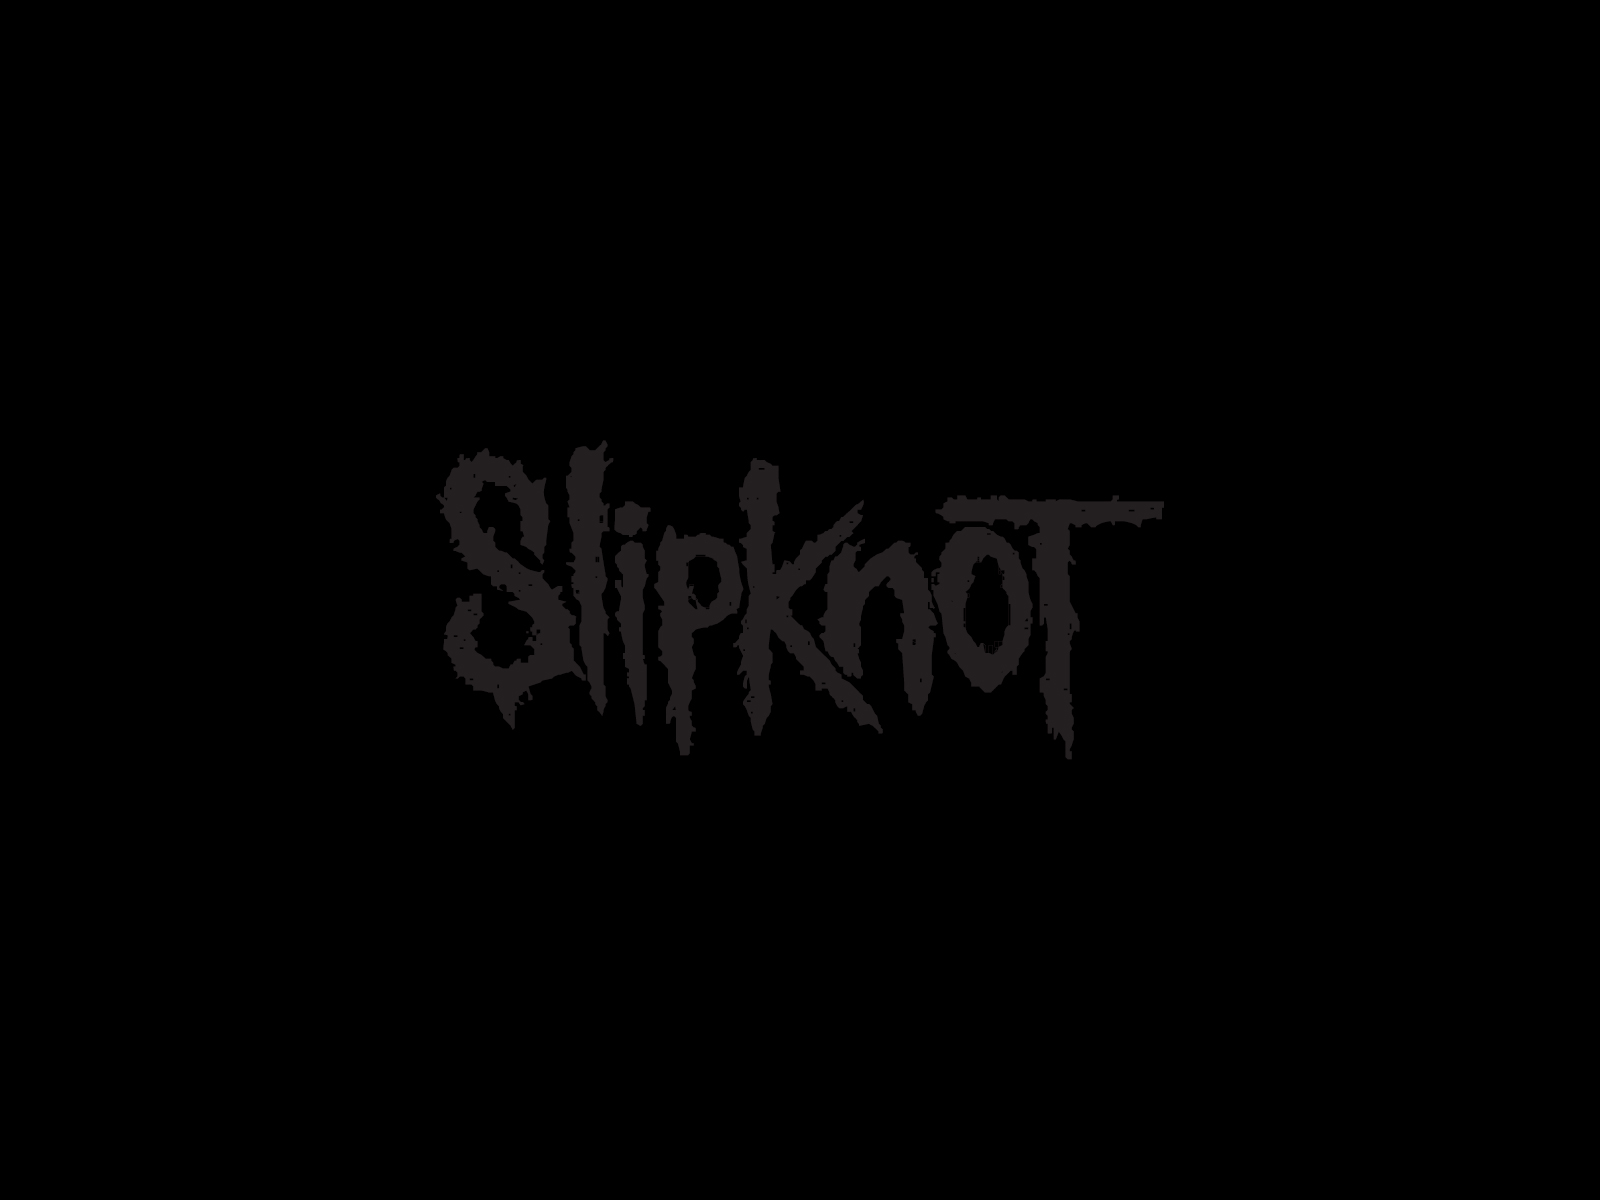 slipknot, nu metal, music, heavy metal, industrial metal Phone Background